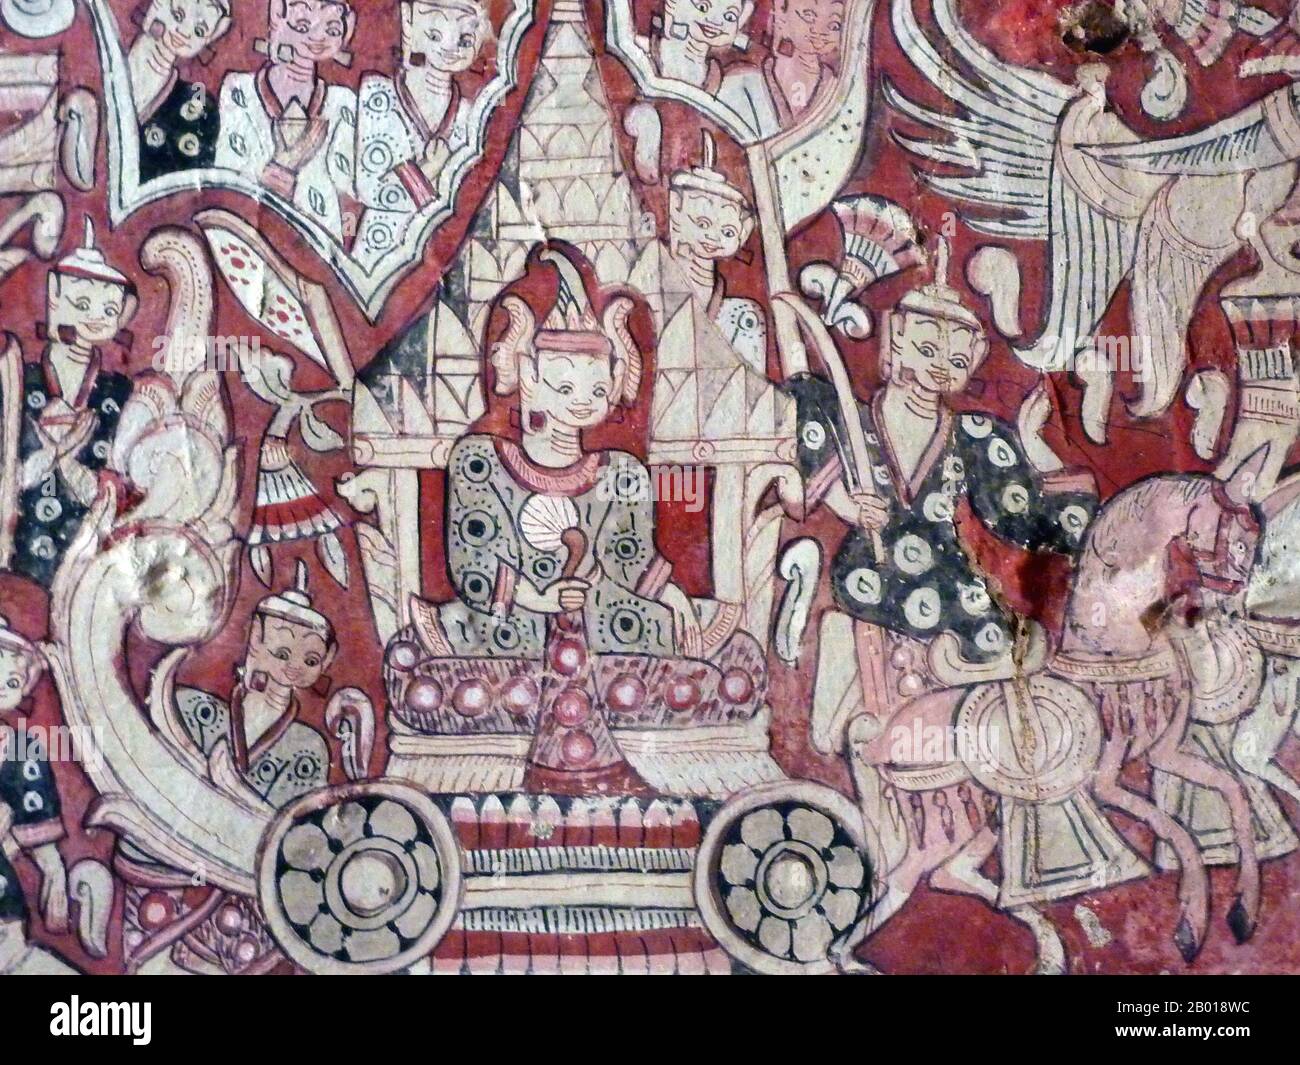 Burma/Myanmar: Wandbild eines burmesischen Königs, der auf einem Wagen reitet, Phowintaung Caves, Monywa, 14.-18. Jahrhundert. Foto von Anandajoti Bhikkhu (CC BY 2,0 License). Phowintaung (auch als Hpowindaung, Powertaung, Po Win Taung romanisiert) ist ein buddhistischer Höhlenkomplex, der etwa 25 Kilometer westlich von Monywa und 10 Kilometer südöstlich von Yinmabin in der Gemeinde Yinmabin, Bezirk Monywa, Region Sagaing, Nord-Burma (Myanmar) liegt. Es liegt am westlichen Ufer des Chindwin River. Der Name des Komplexes bedeutet „Berg der isolierten einsamen Meditation“. Stockfoto